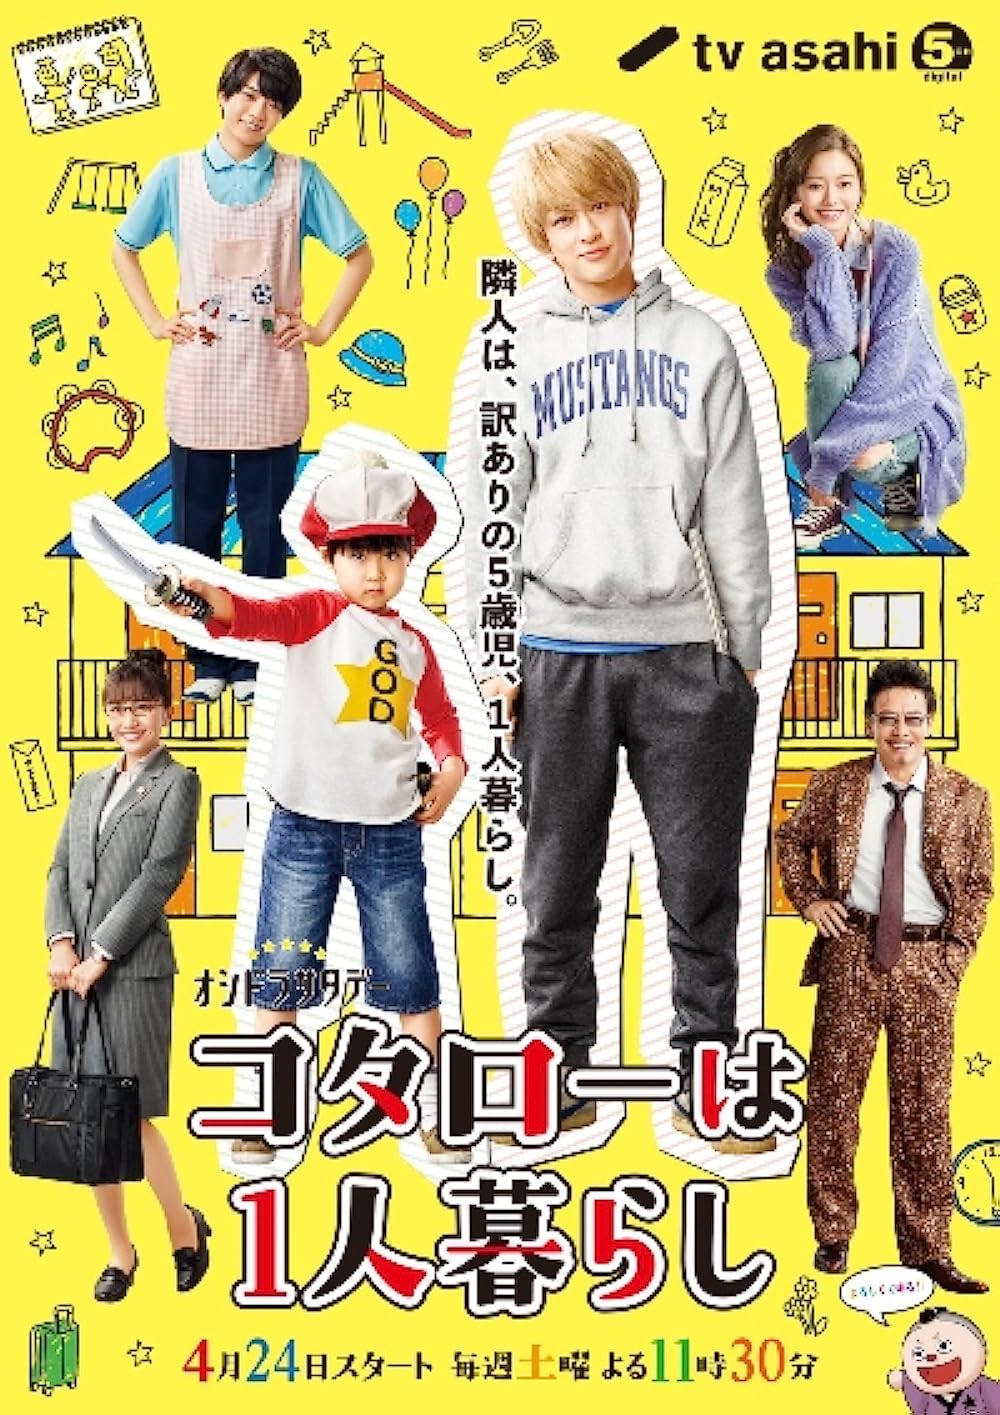 ดูหนังออนไลน์ฟรี ซีรี่ส์ญี่ปุ่น Kotaro wa Hitorigurashi 2 โคทาโร่ อยู่บ้านคนเดัยว 2 ซับไทย (จบ)